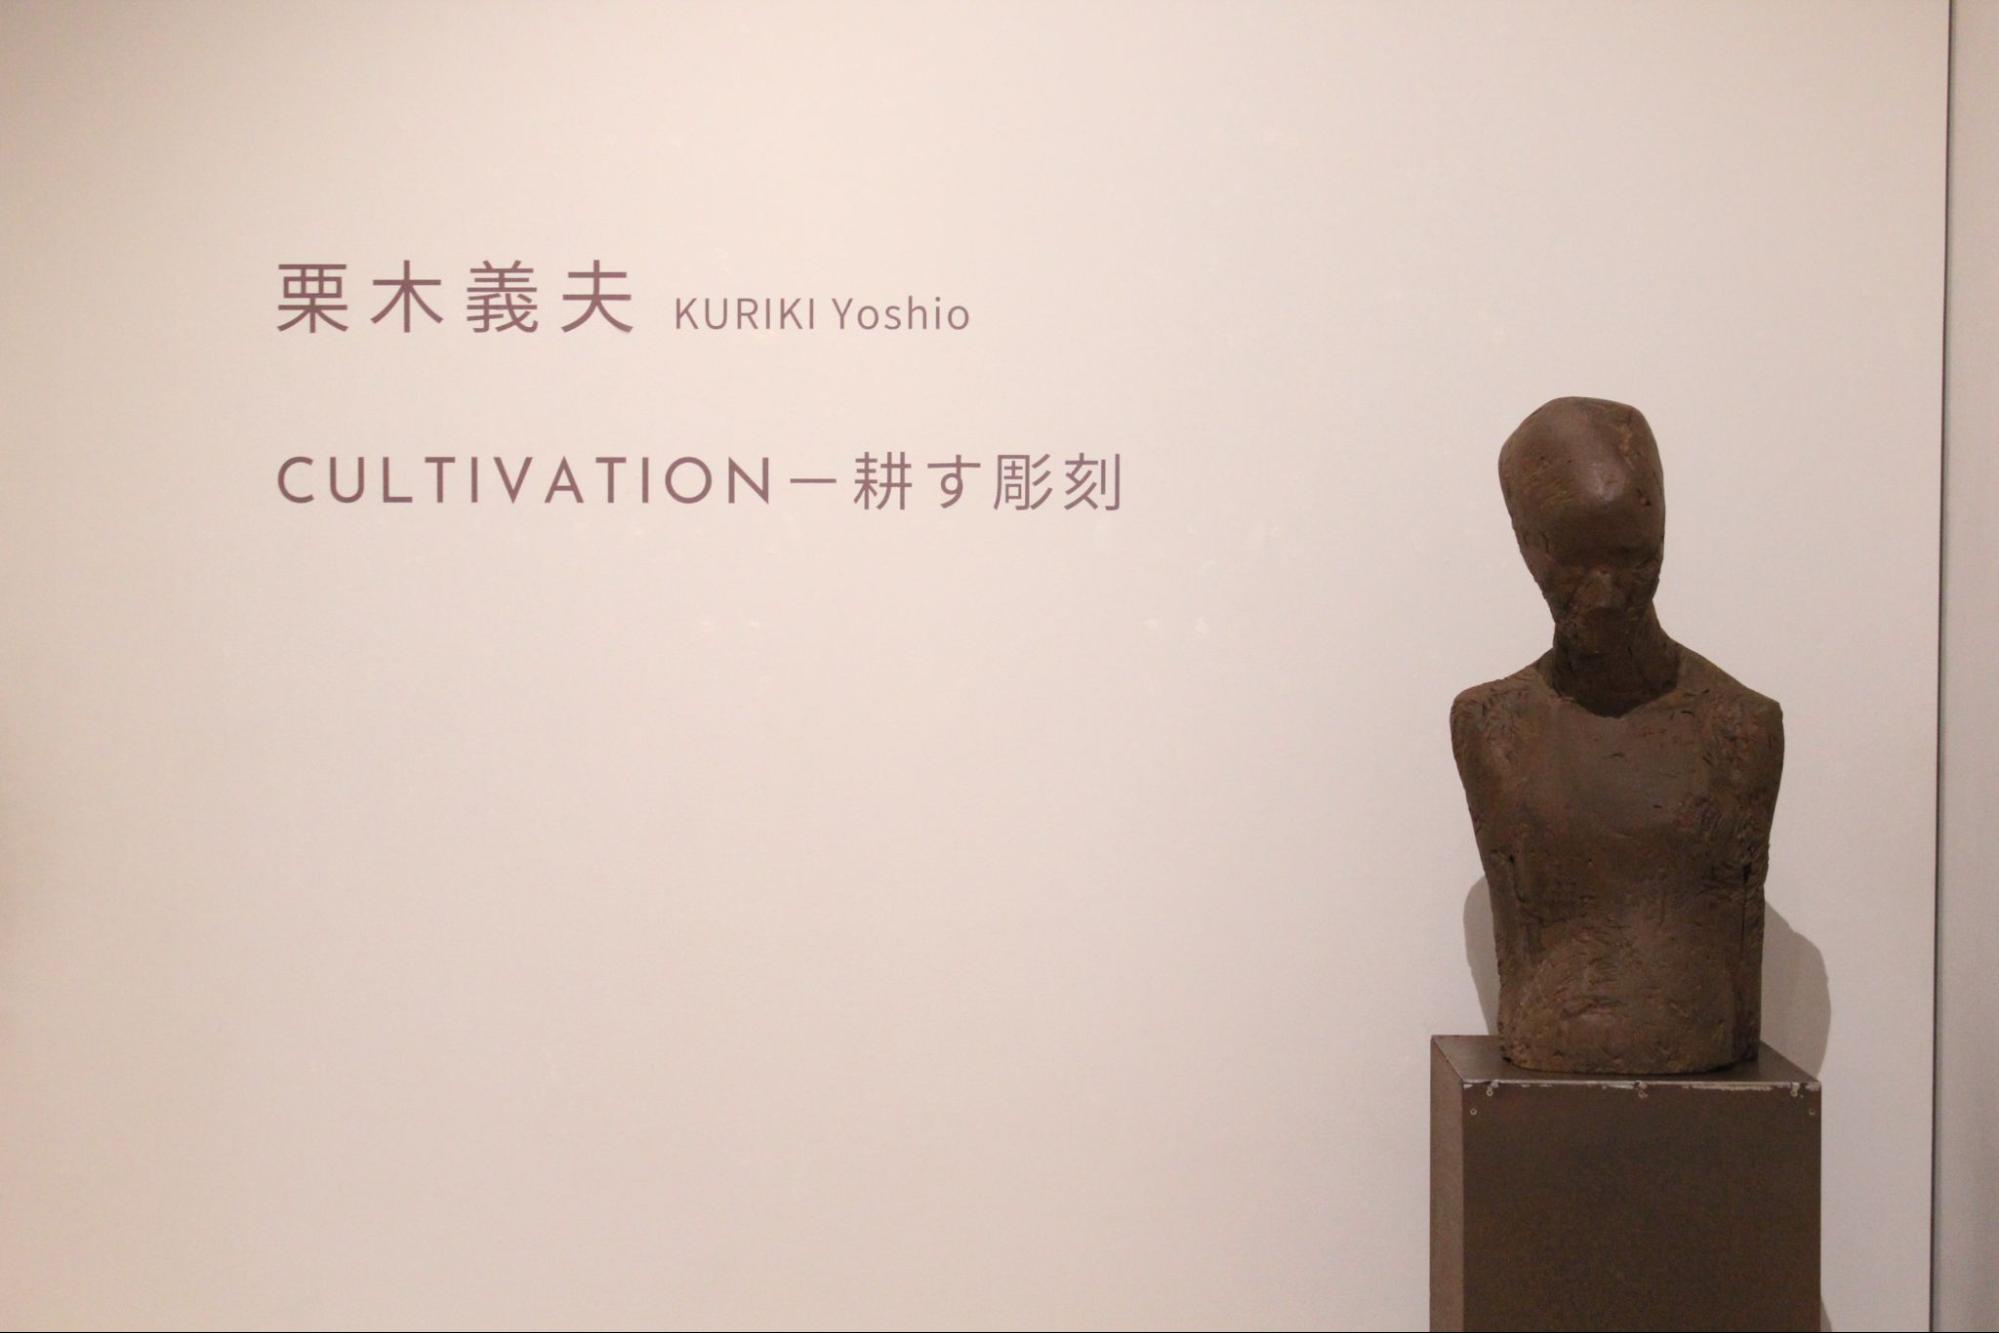 はるひ美術館で栗木義夫「CULTIVATION－耕す彫刻」をみる